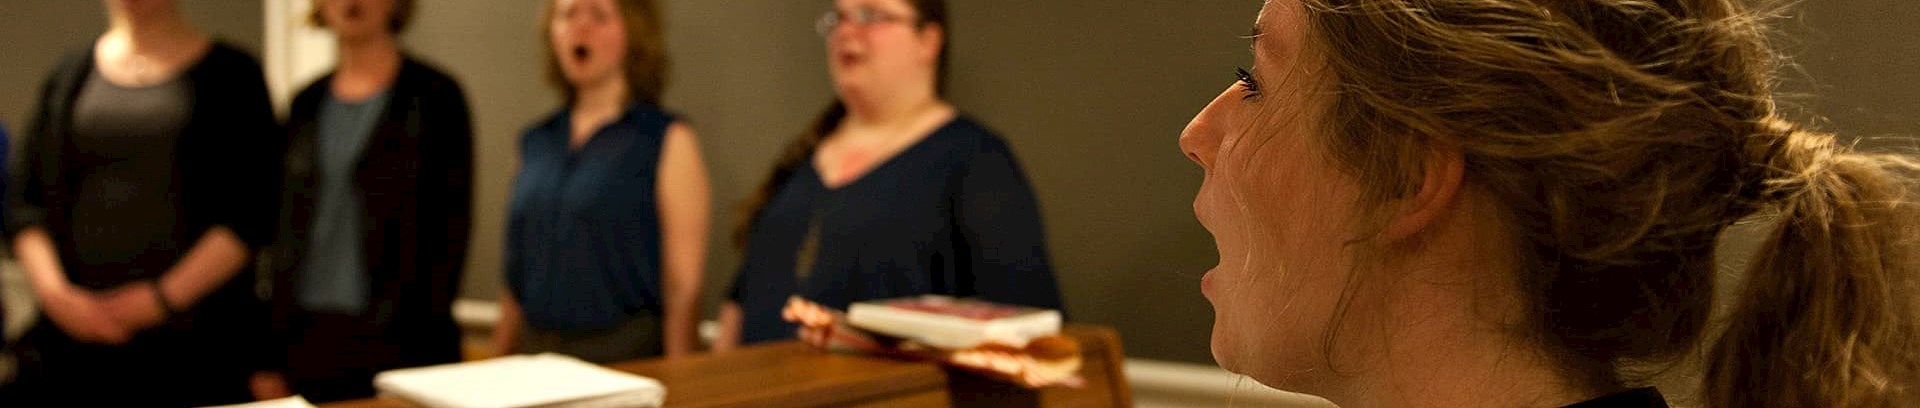 Sangundervisningstime ved FOF Aarhus underviser Birgitte Mortensen